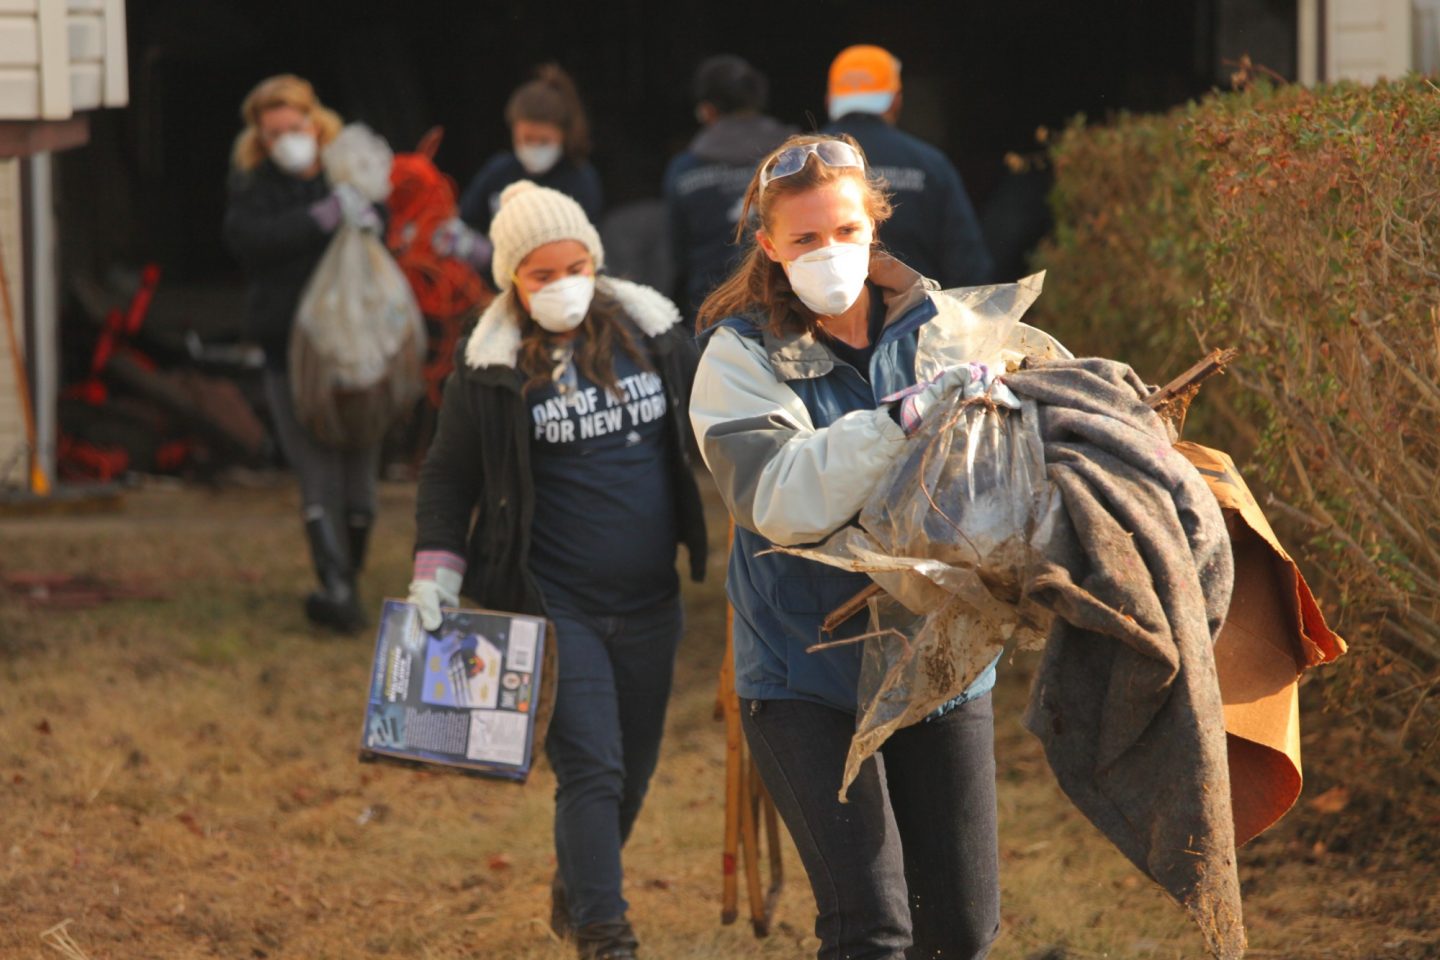 Volunteers carry armfuls of debris from Hurricane Sandy